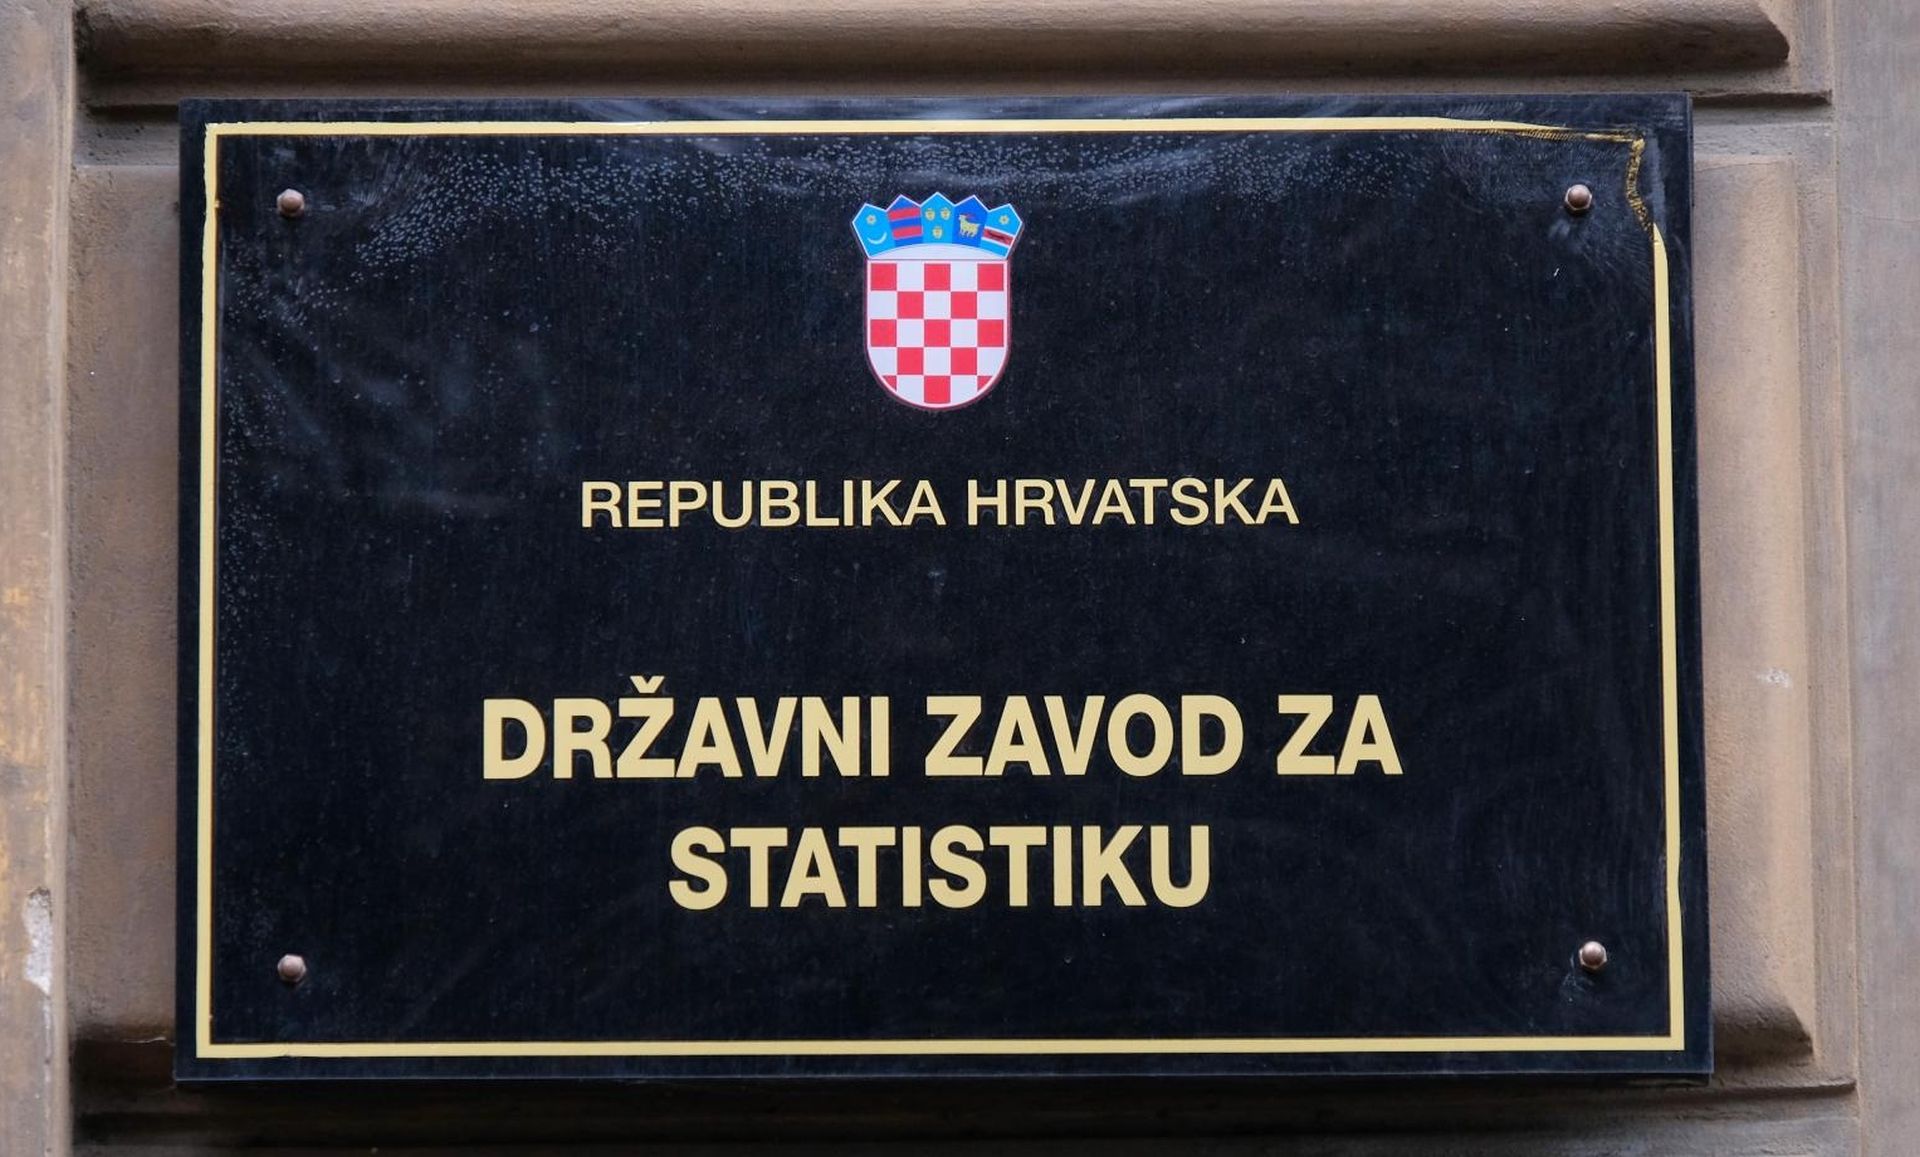 Zagreb: Državni zavod za statistiku  30.12.2018, Zagreb - Drzavni zavod za statistiku u Branimirovoj 19. Photo: Tomislav Miletic/PIXSELL